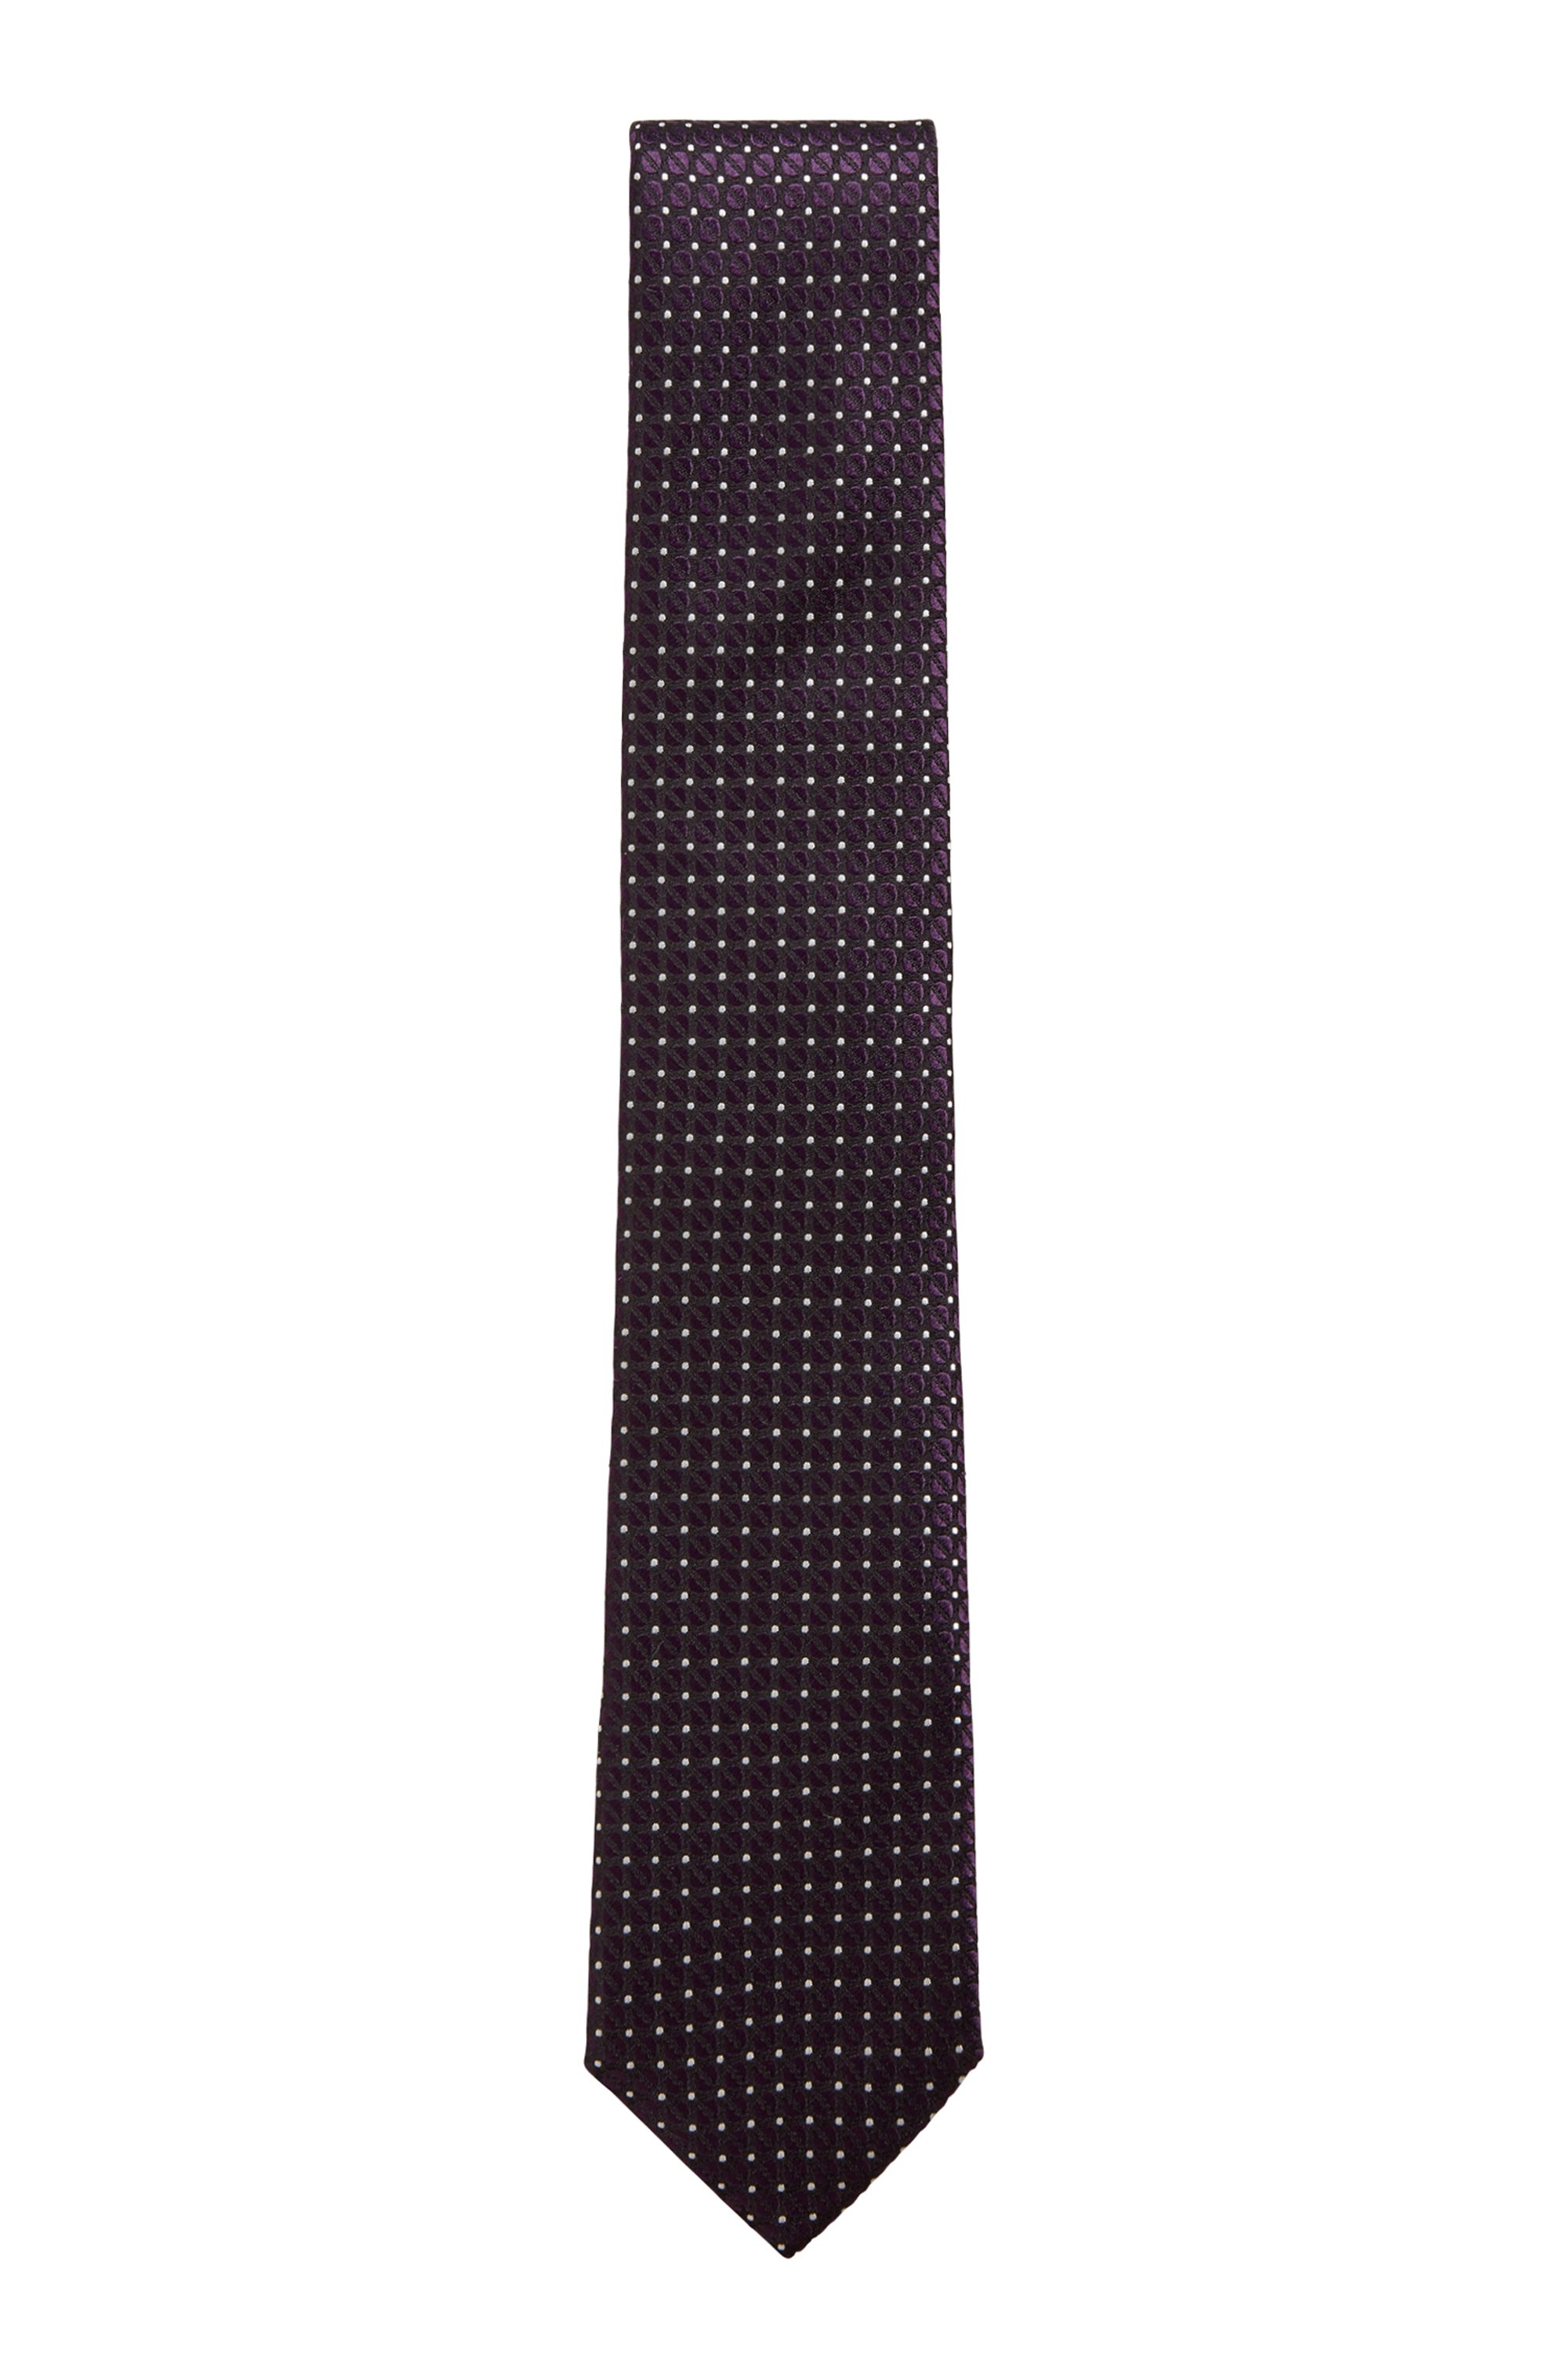 Krawatte aus wasserabweisender Seiden mit Jacquard-Muster, Dunkel Lila